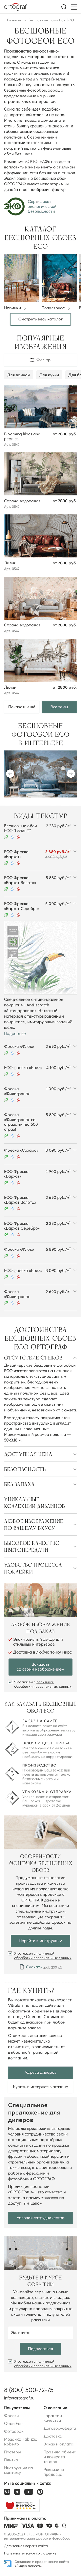 Страница продукции сайта ortograf.ru на мобильных